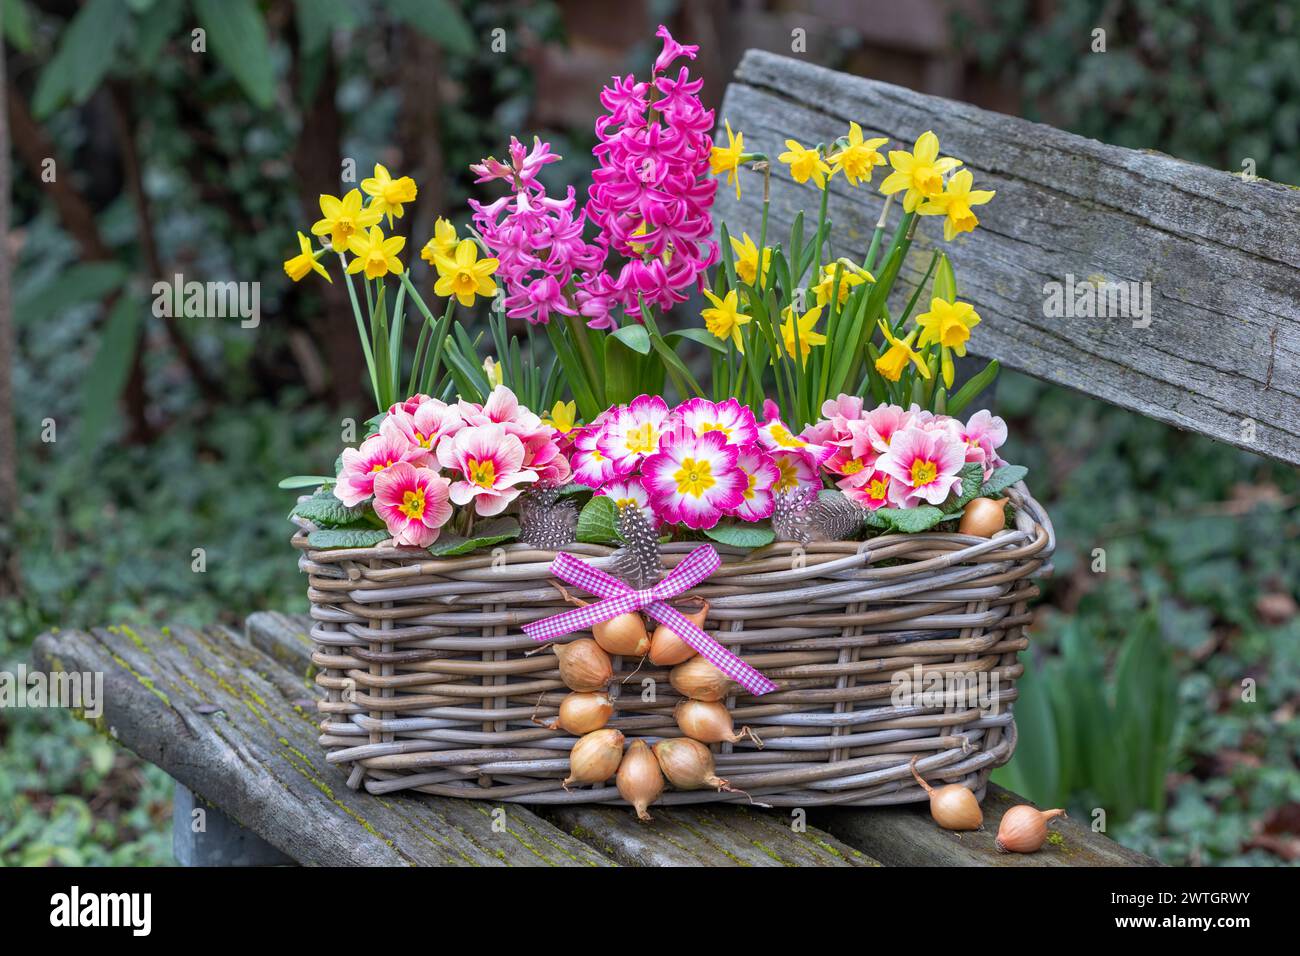 primevères roses, fleurs de jacinthe et narcisse jaune dans un panier sur un banc de jardin Banque D'Images